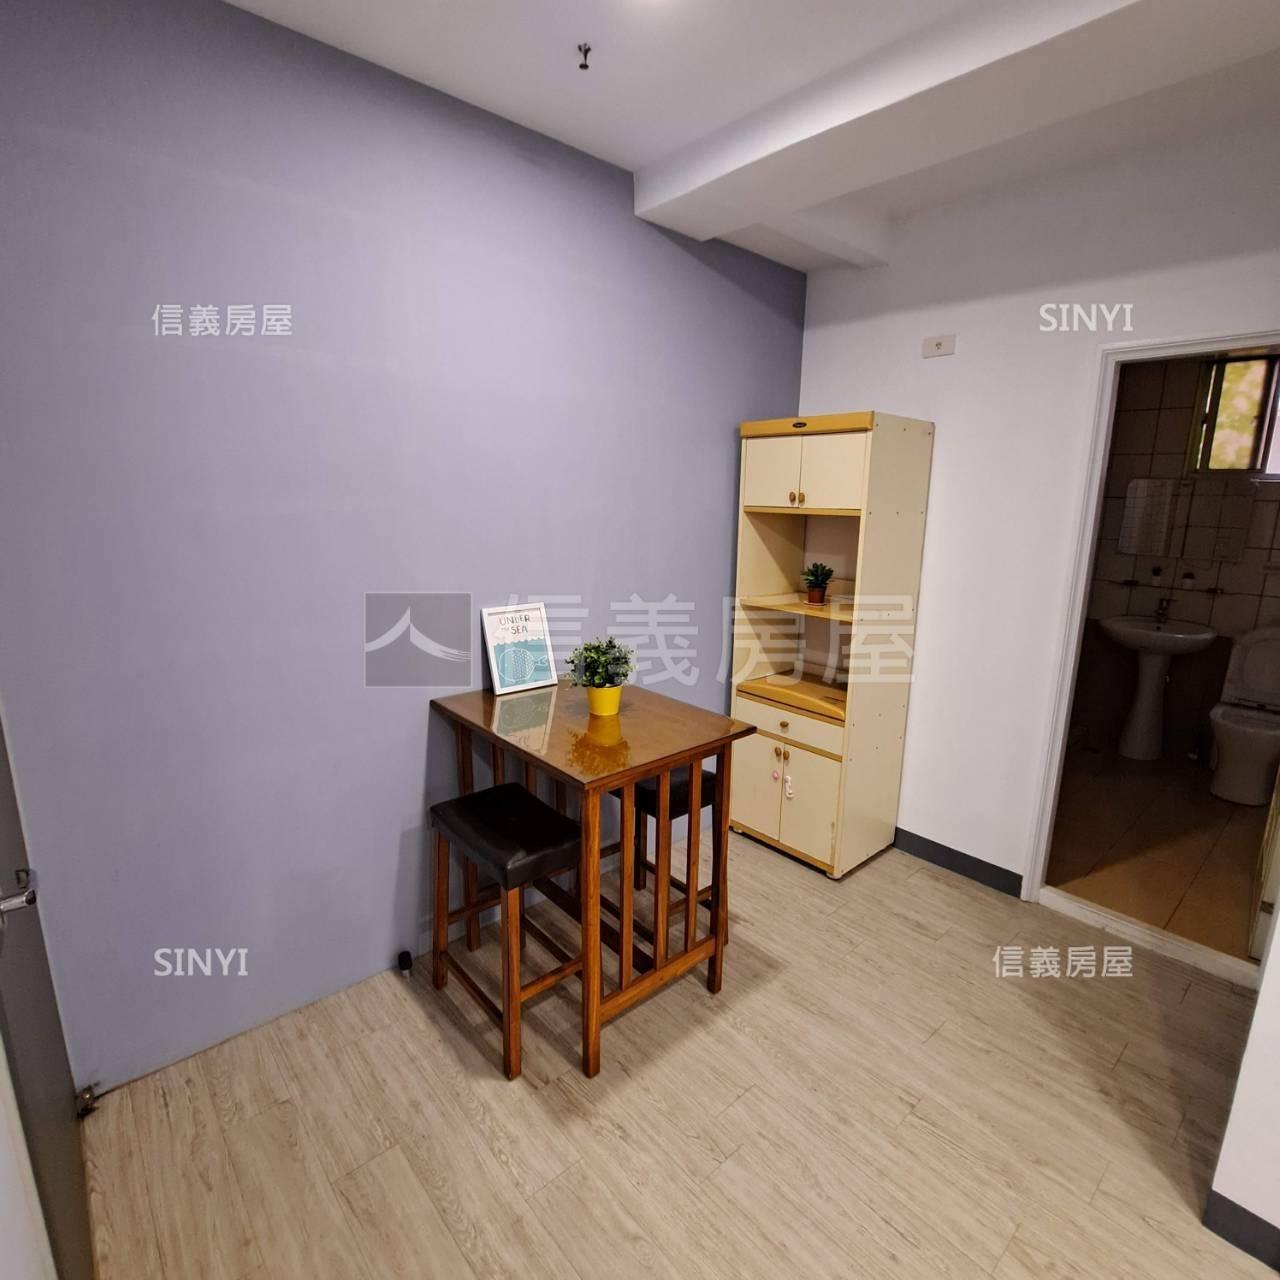 台北桃源收租置產美三房房屋室內格局與周邊環境